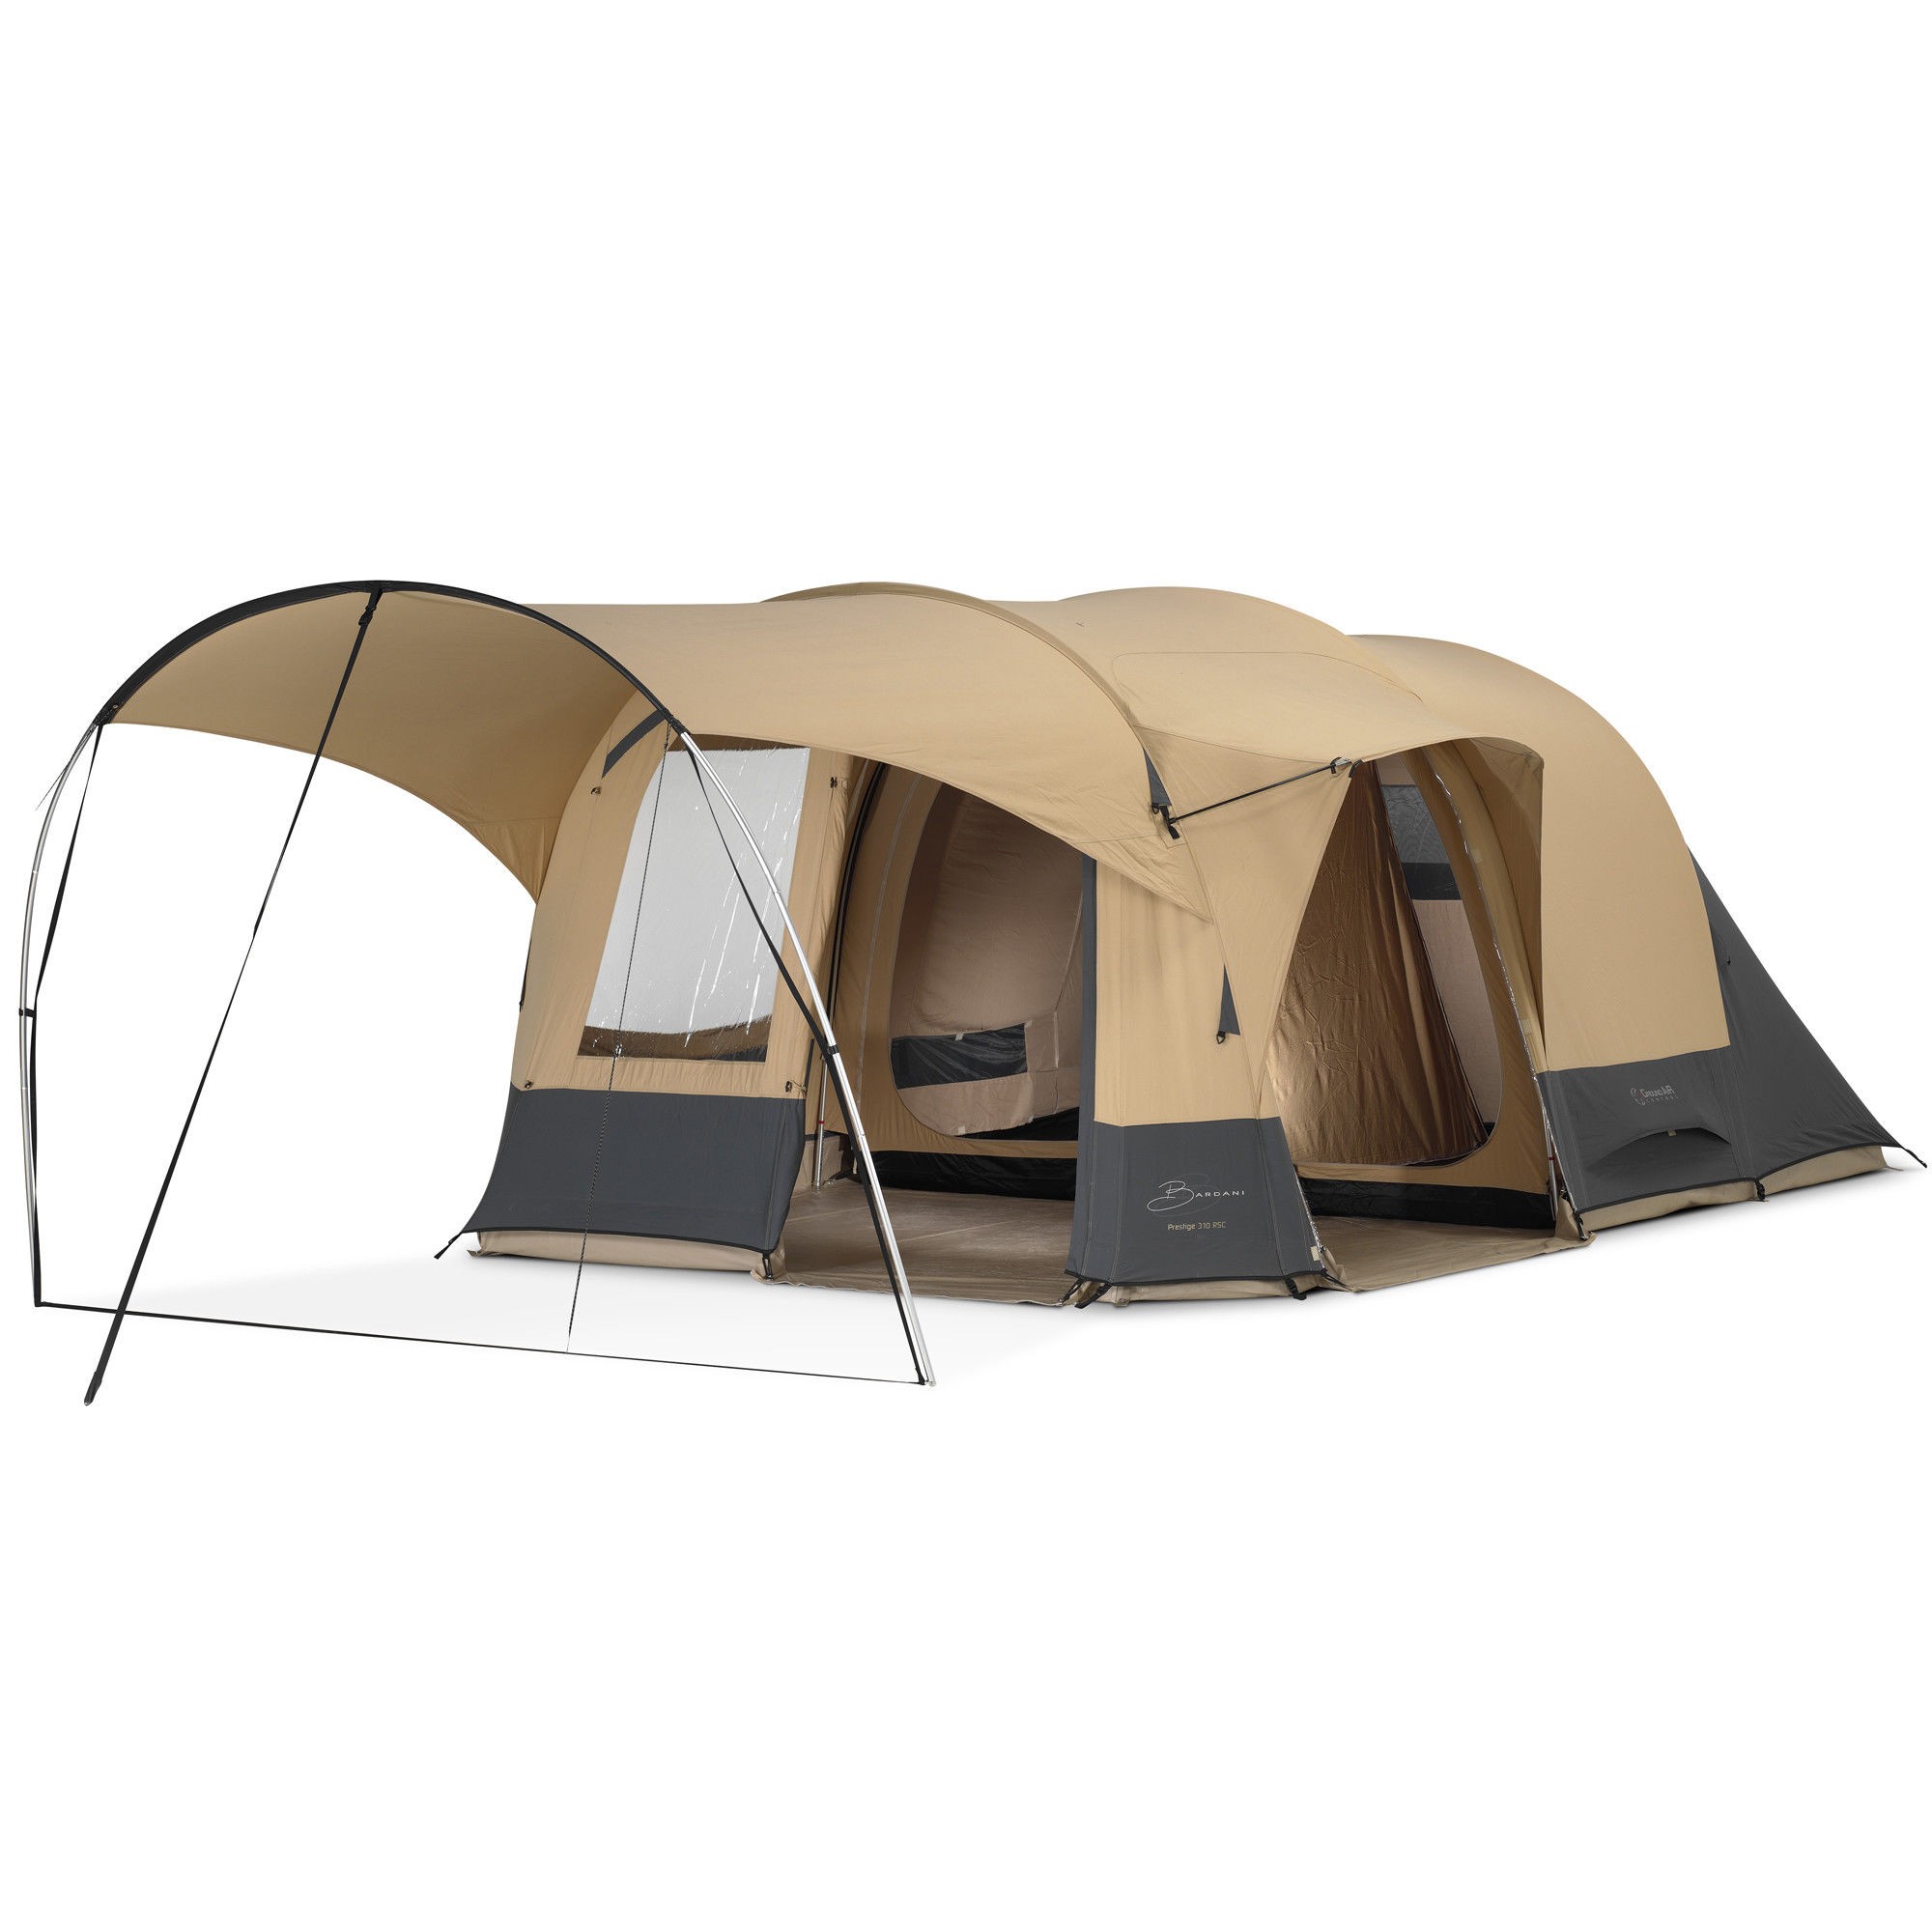 ik ga akkoord met reinigen veiling Bardani tenten een kwaliteitsmerk voor comfortabel kamperen -  KampeerMagazine